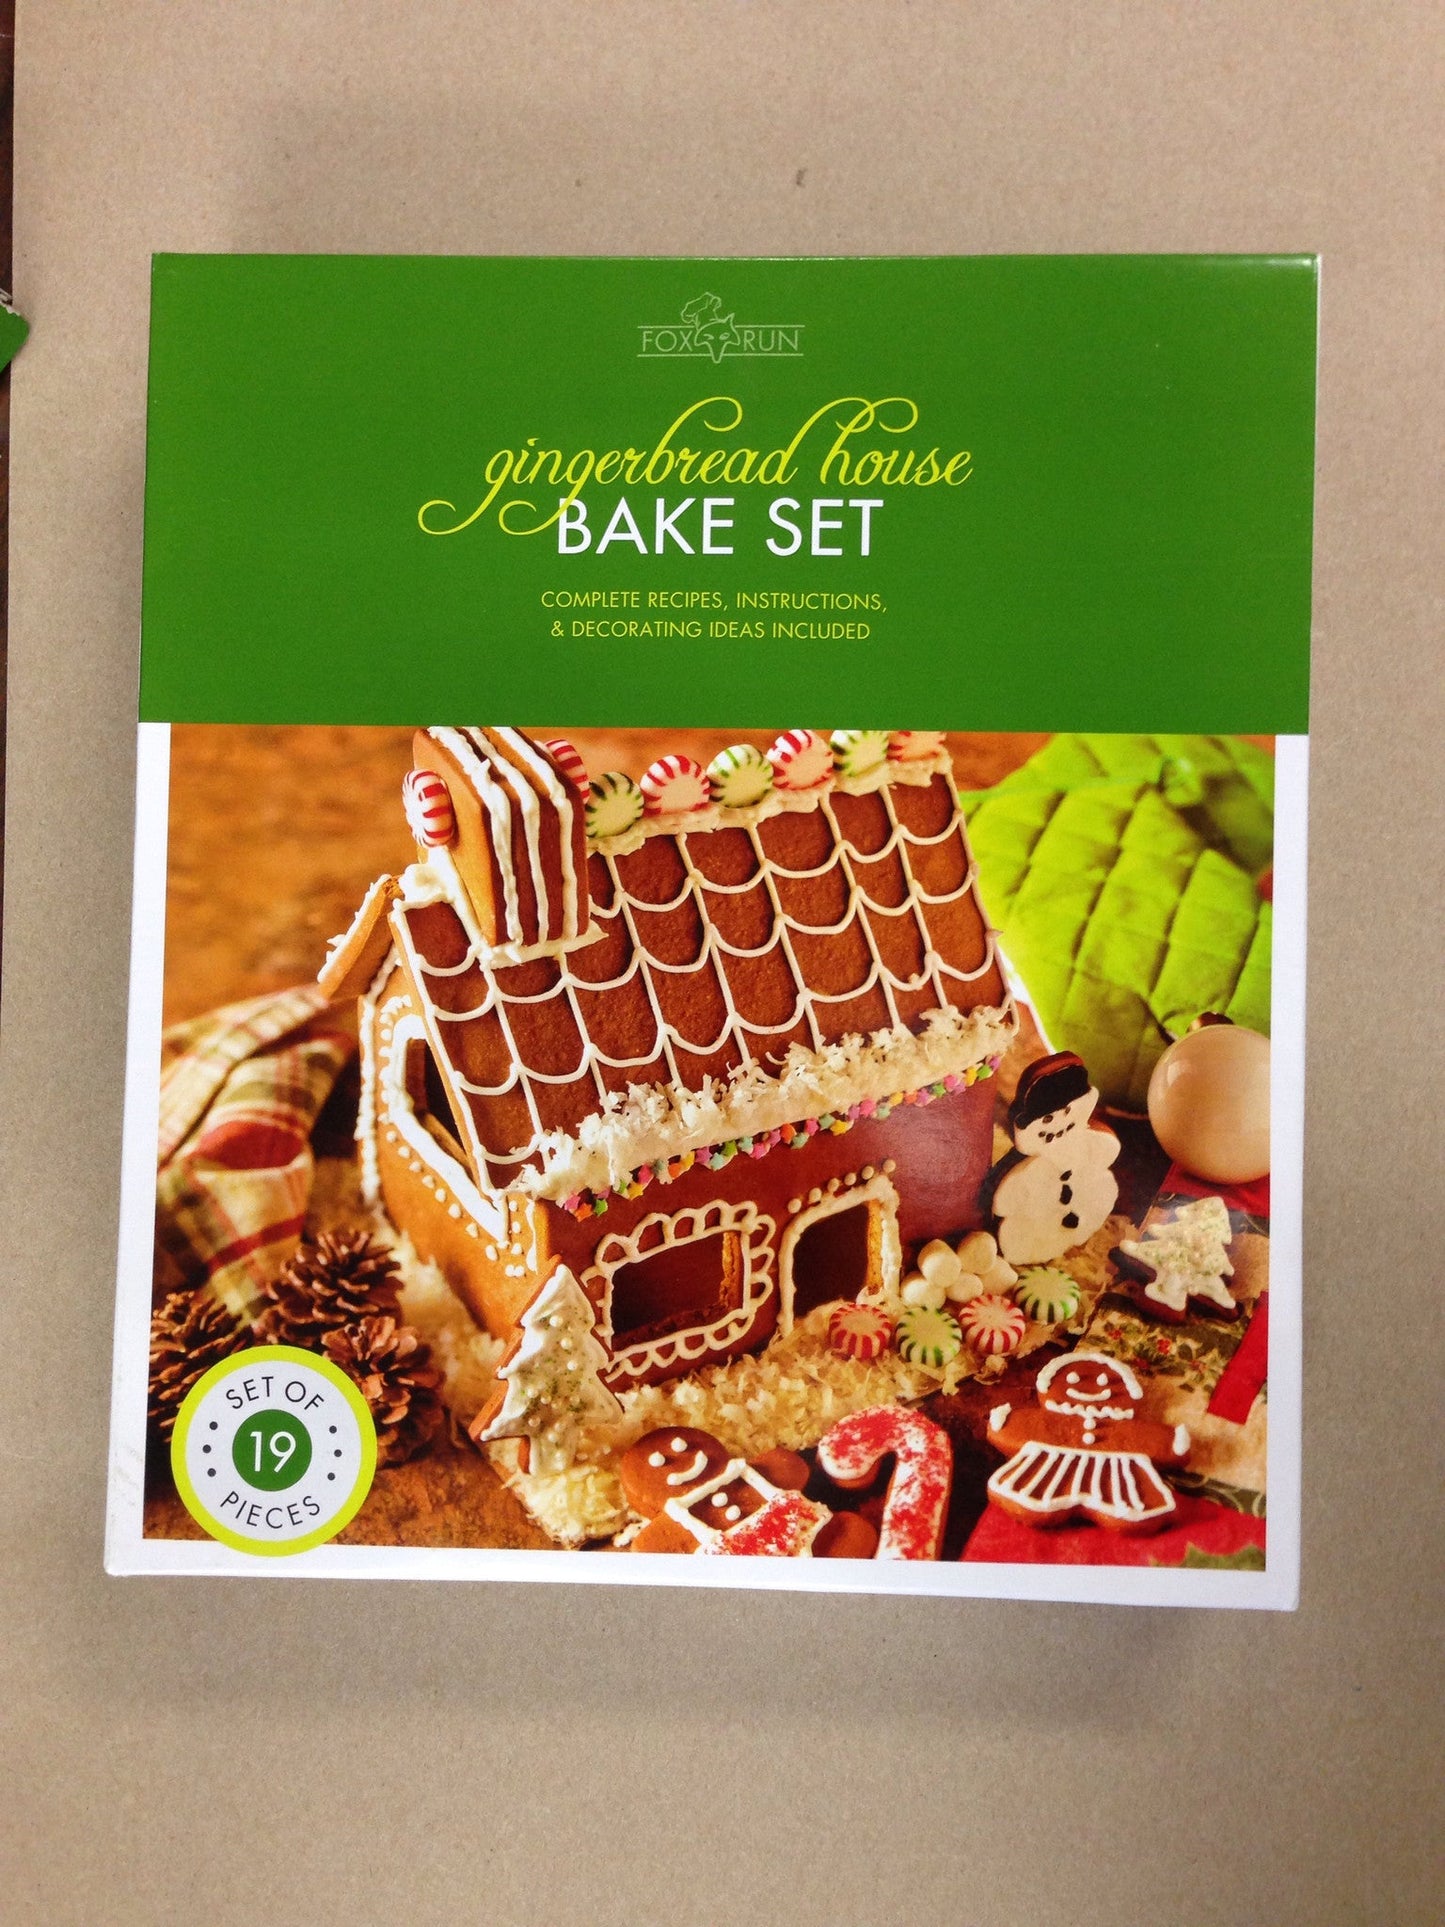 Gingerbread house bake set